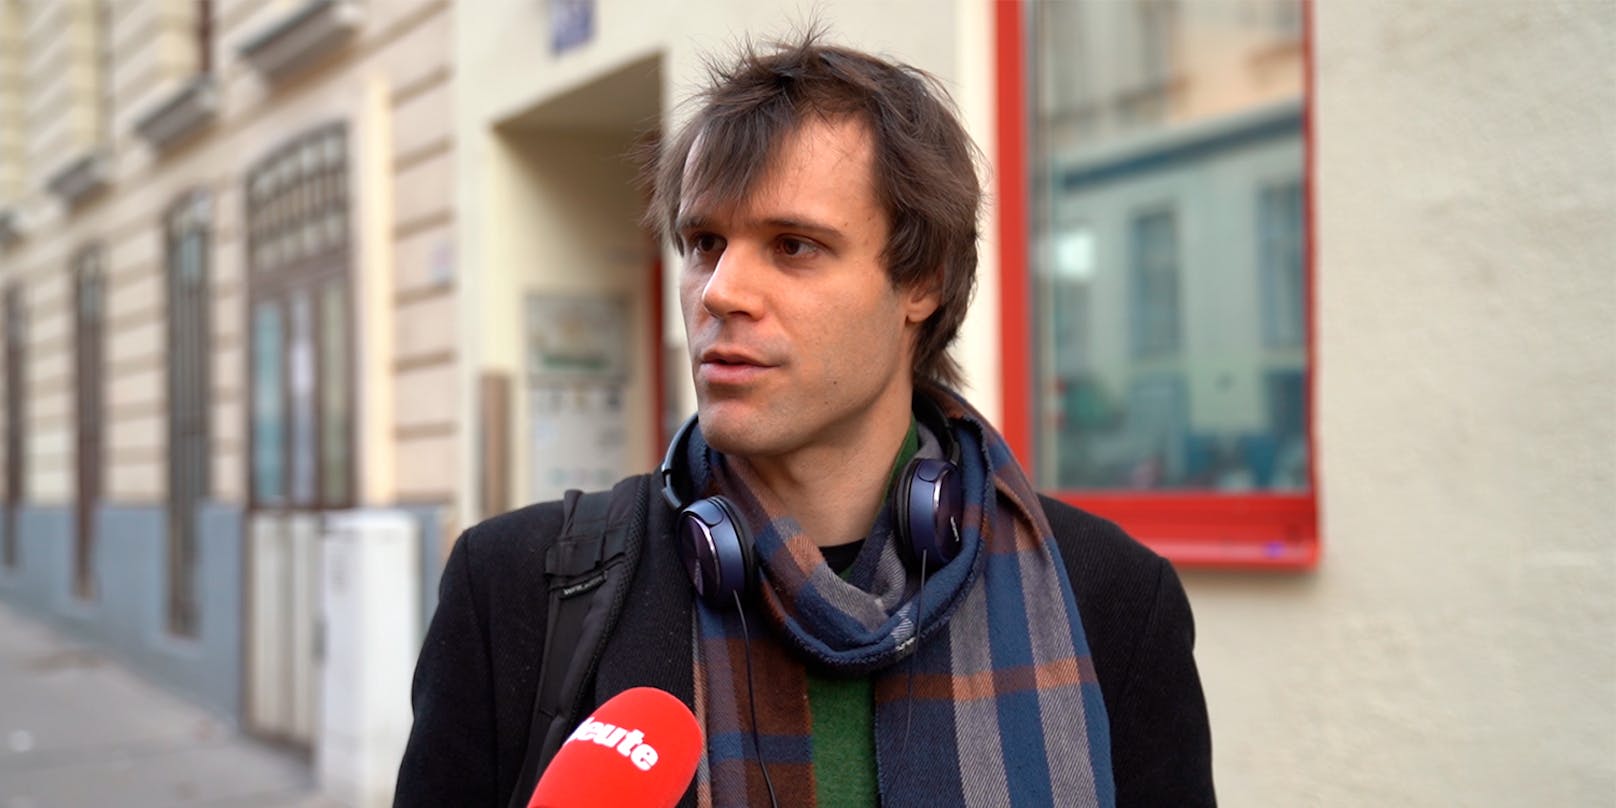 Wiener (31): "Ohne Sozialmarkt hätte ich keine Chance"